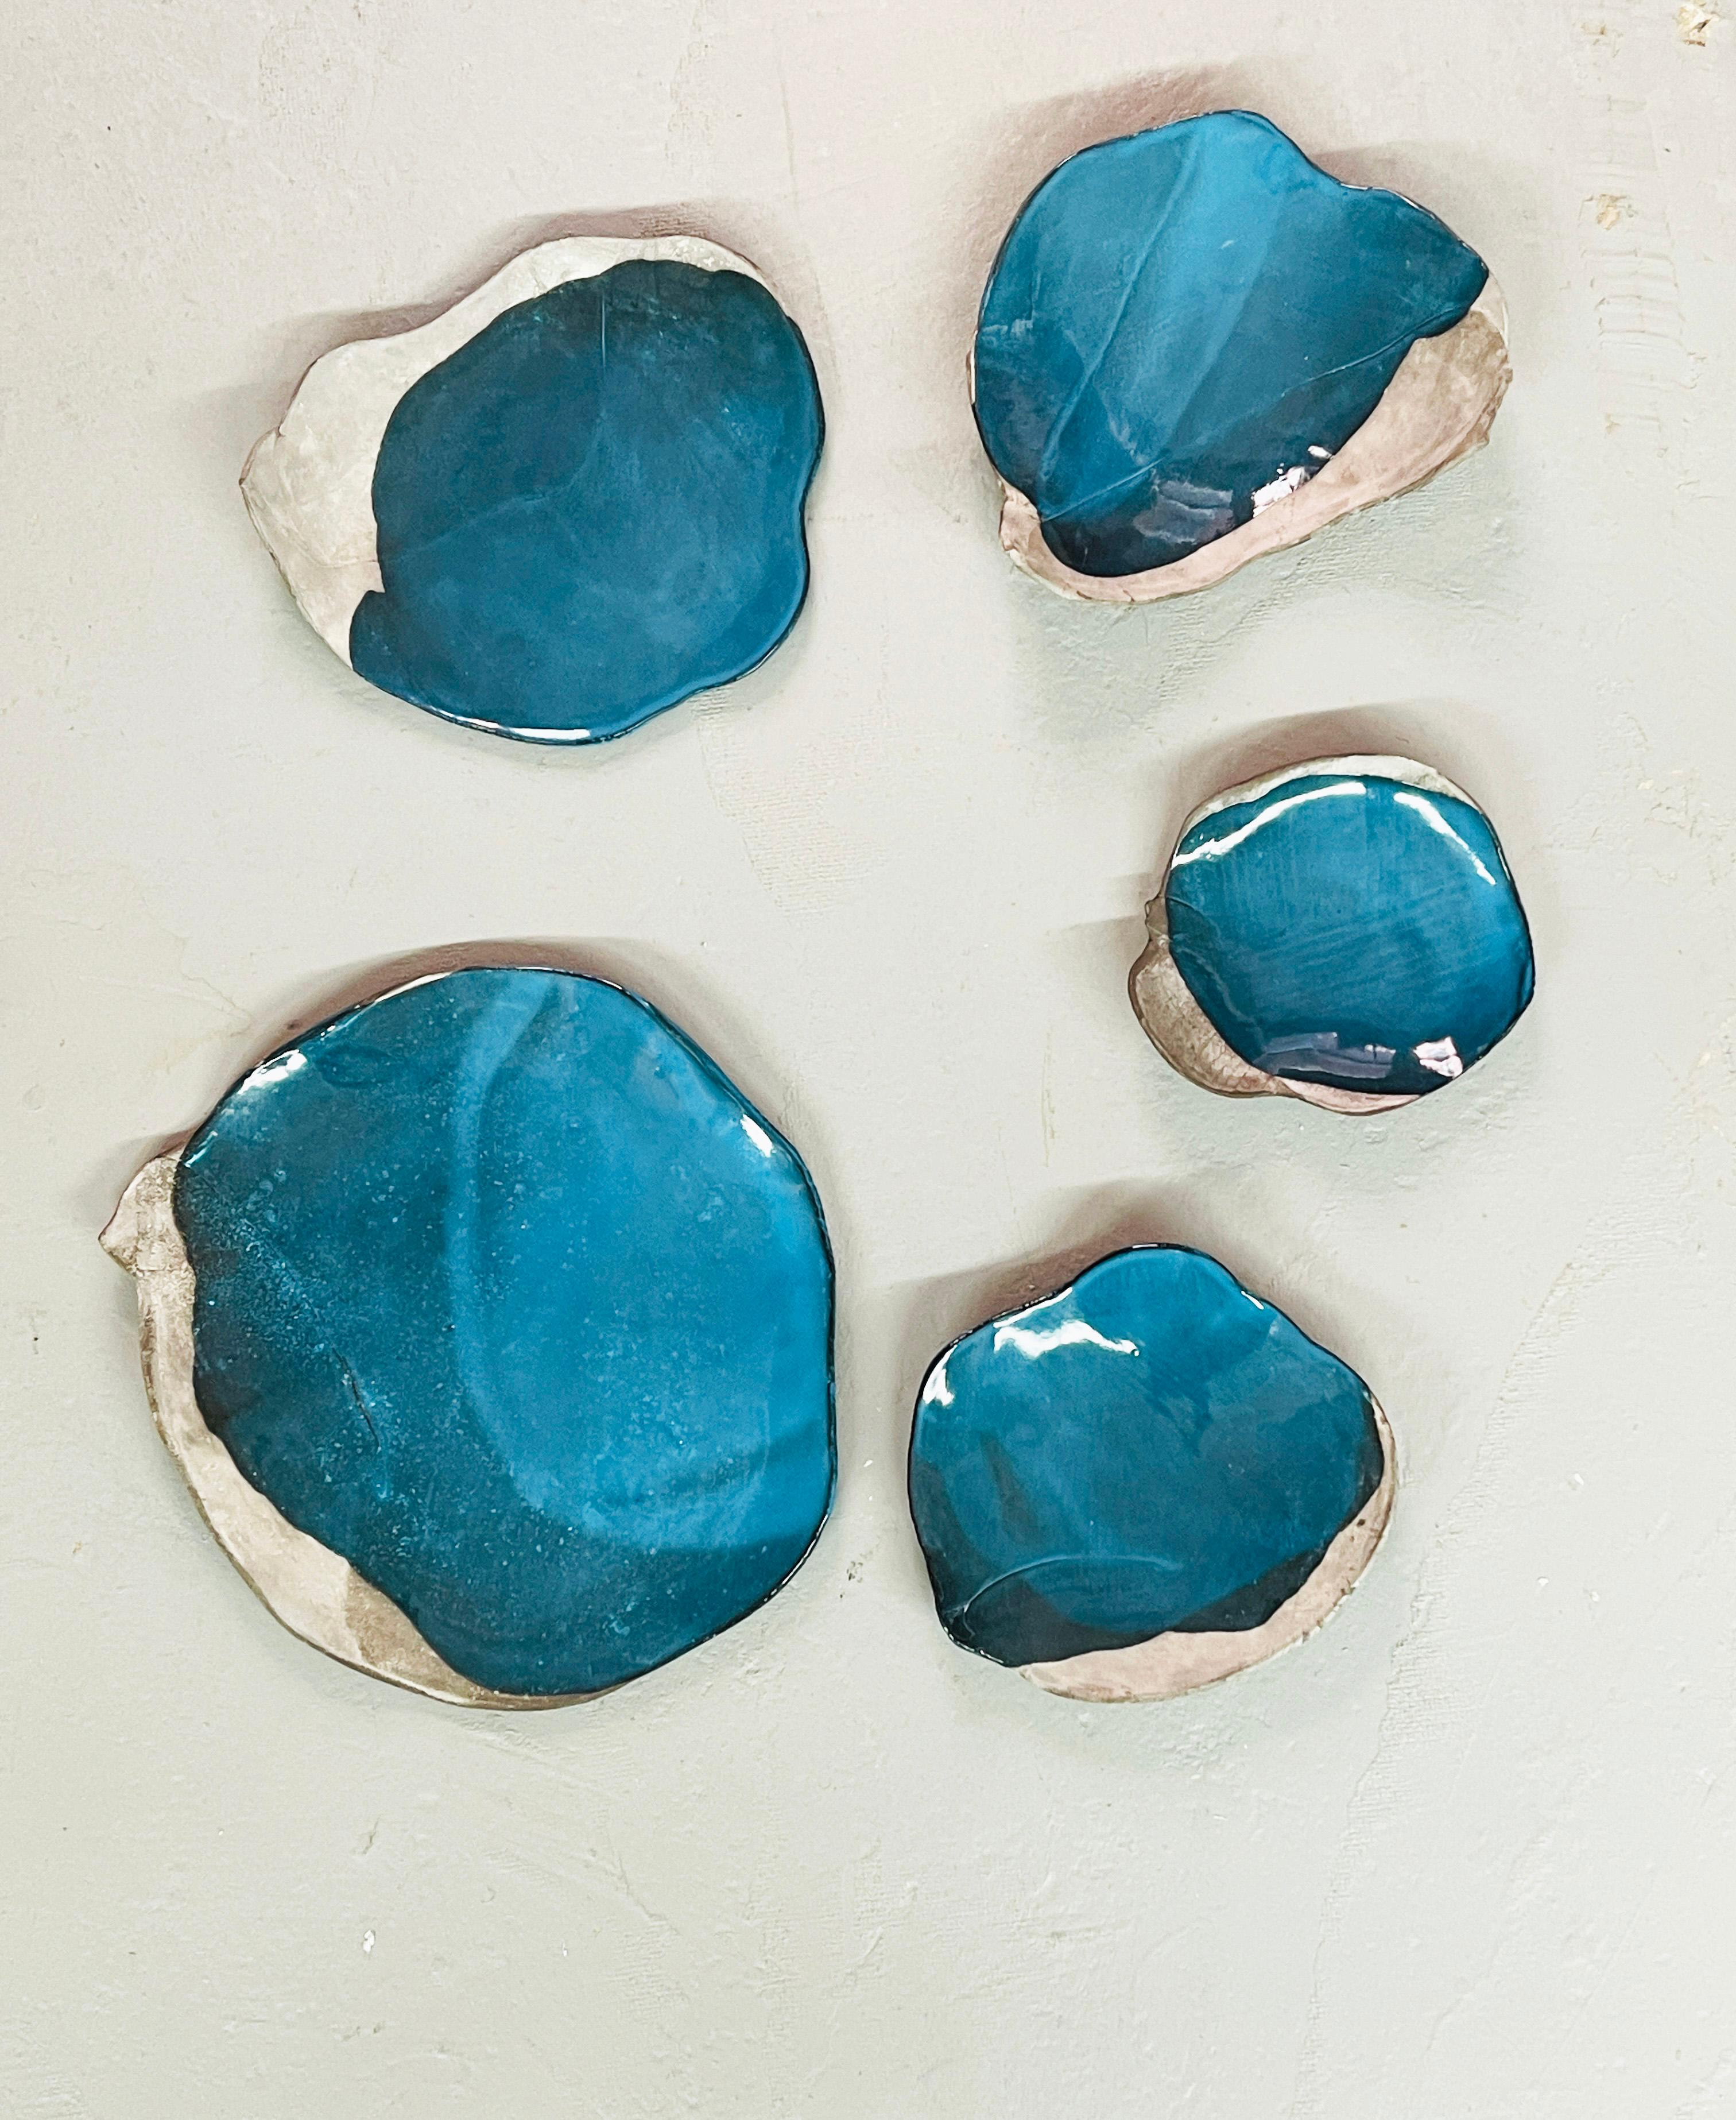 5 Keramiken in verschiedenen Größen, die rohe und glatte glasierte Oberflächen mischen. Einzigartiges Kunstwerk. Signiert
Konstellationen nehmen in der Arbeit des Künstlers einen wichtigen Platz ein.
